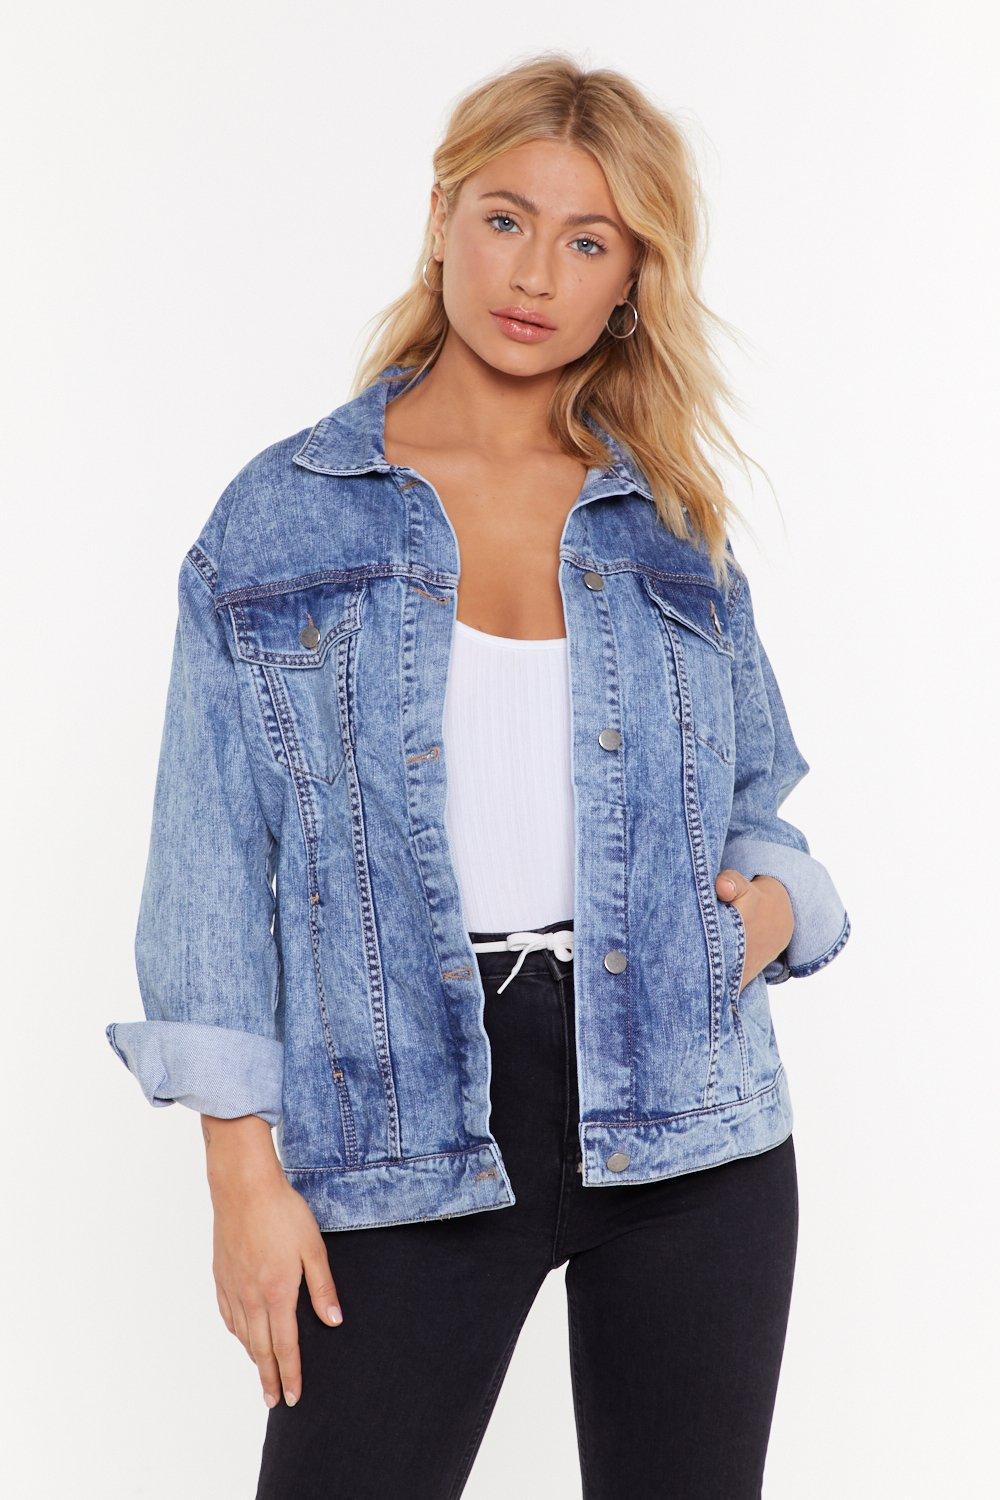 oversized jean jacket womens